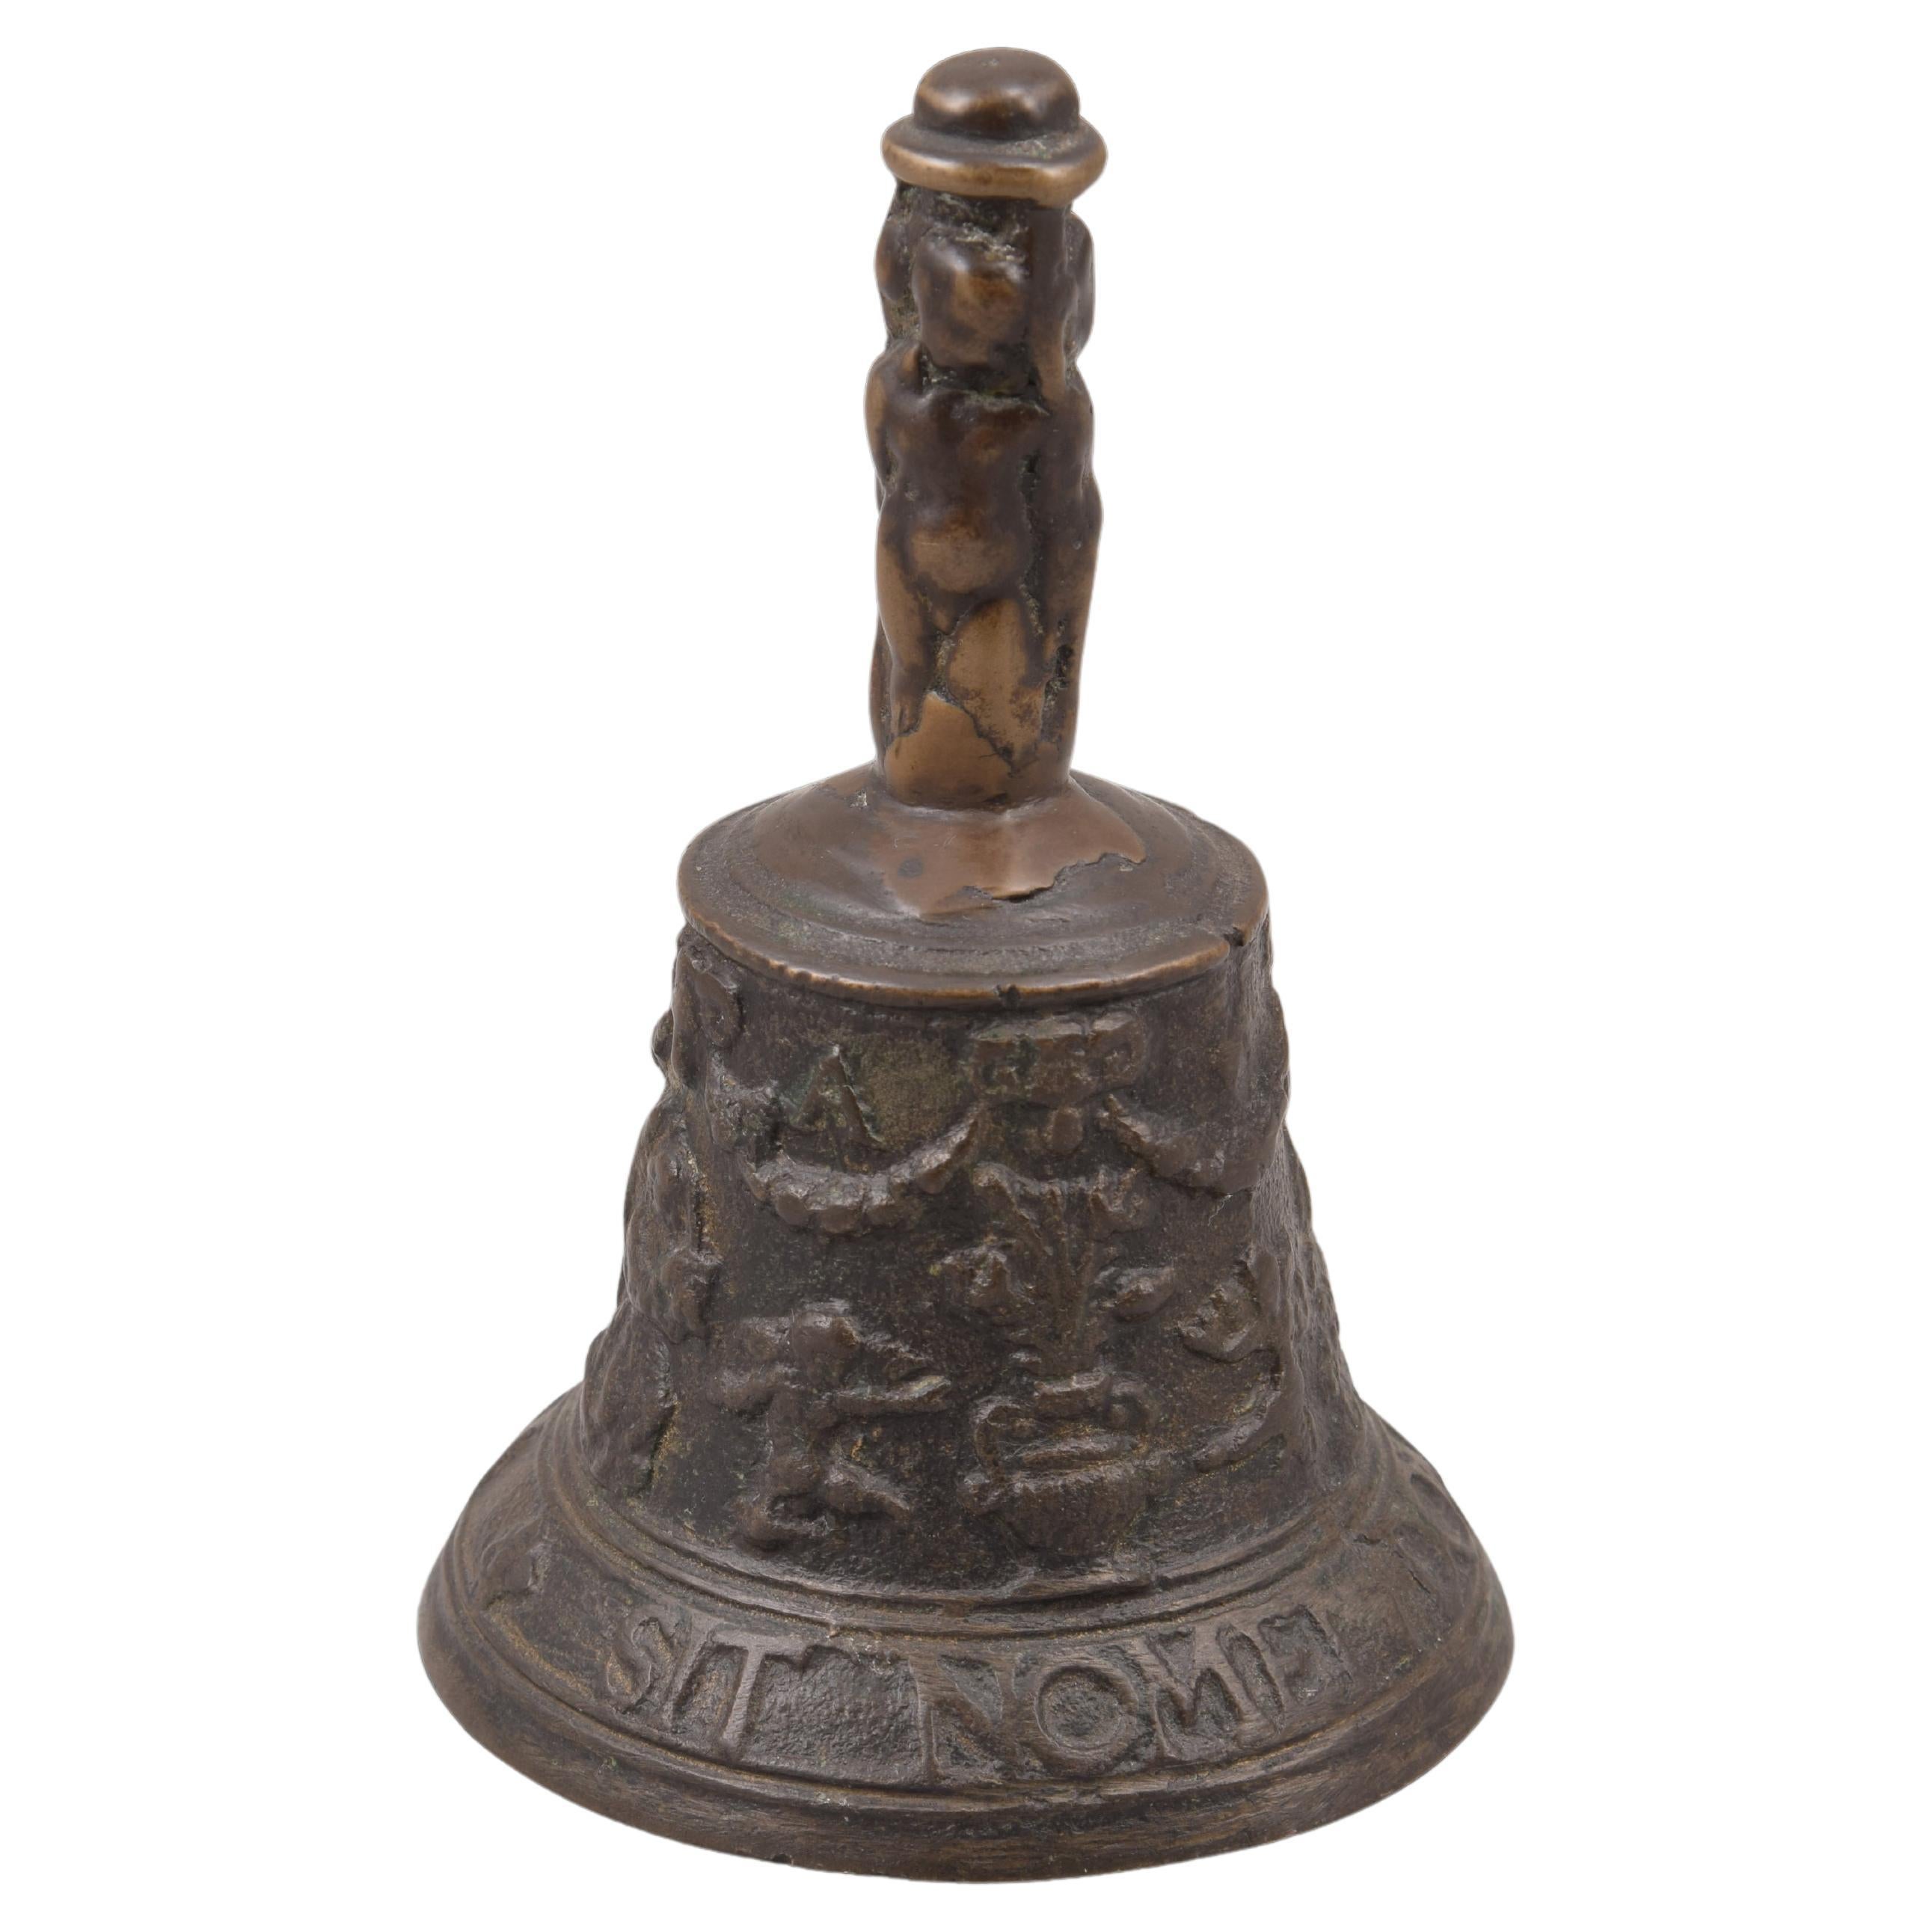 Mechelen bell. Bronze. 16th century.